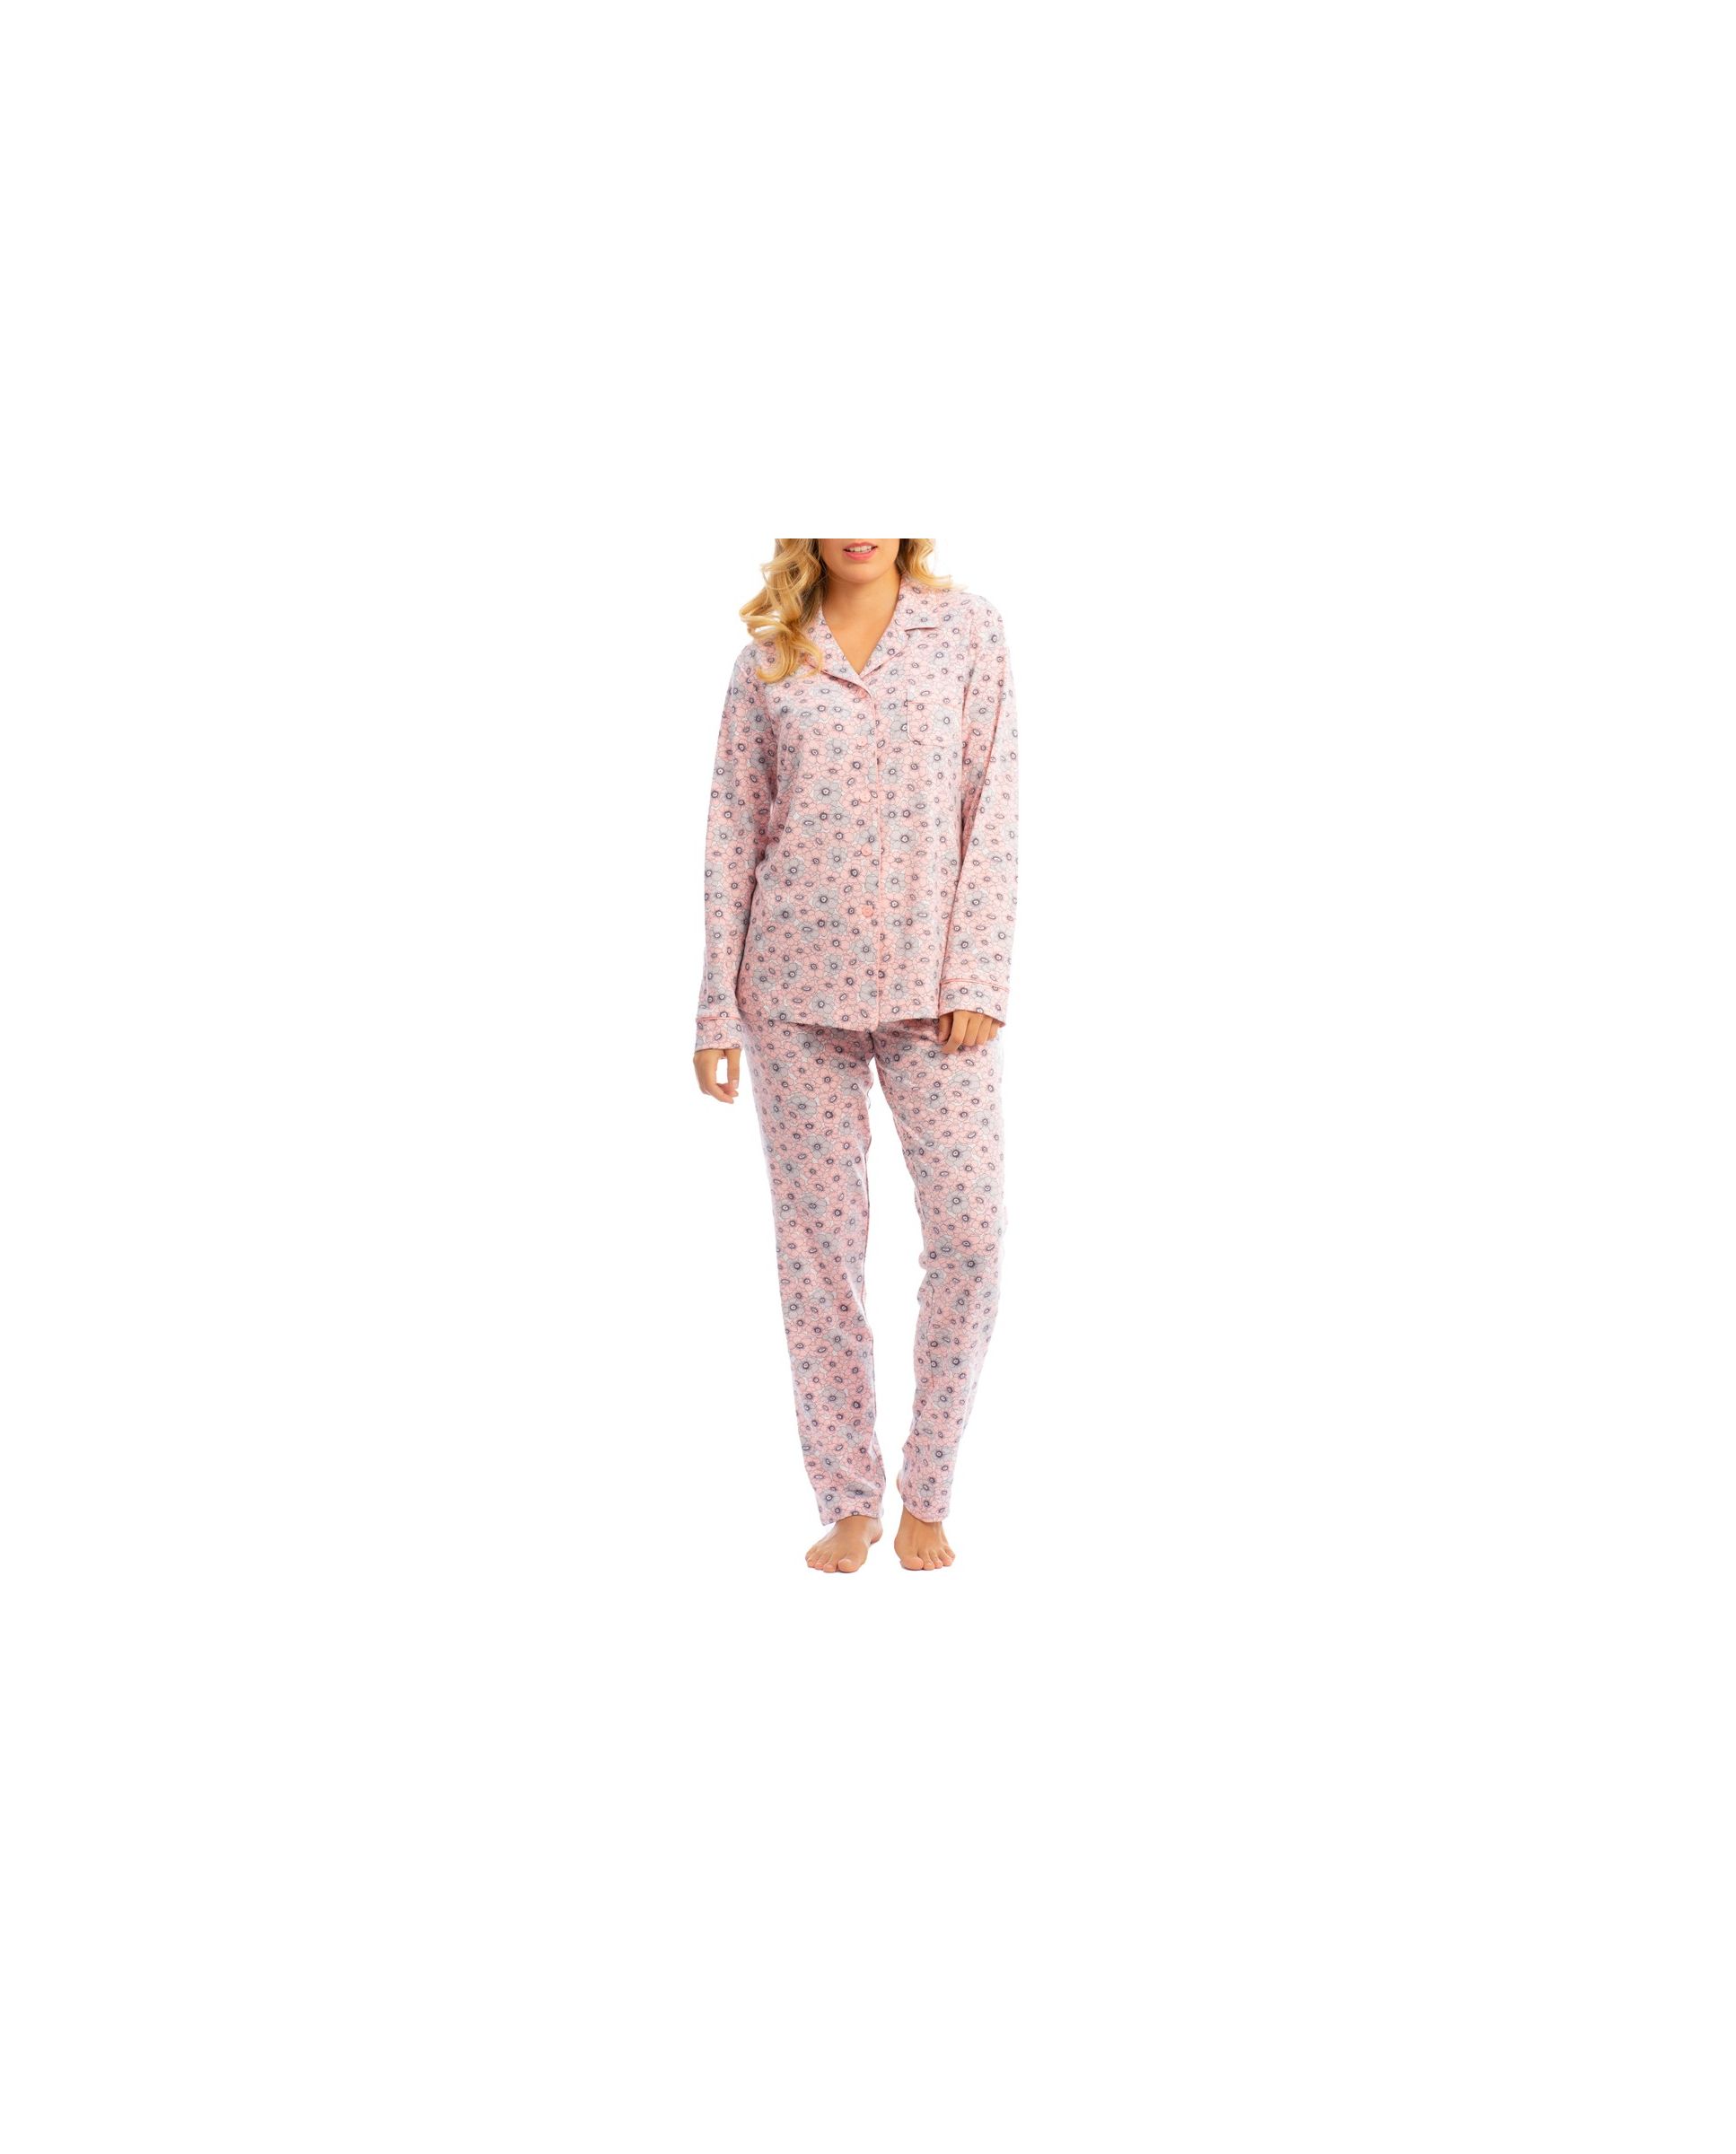 Pijama largo de invierno de mujer de flores rosas abierto